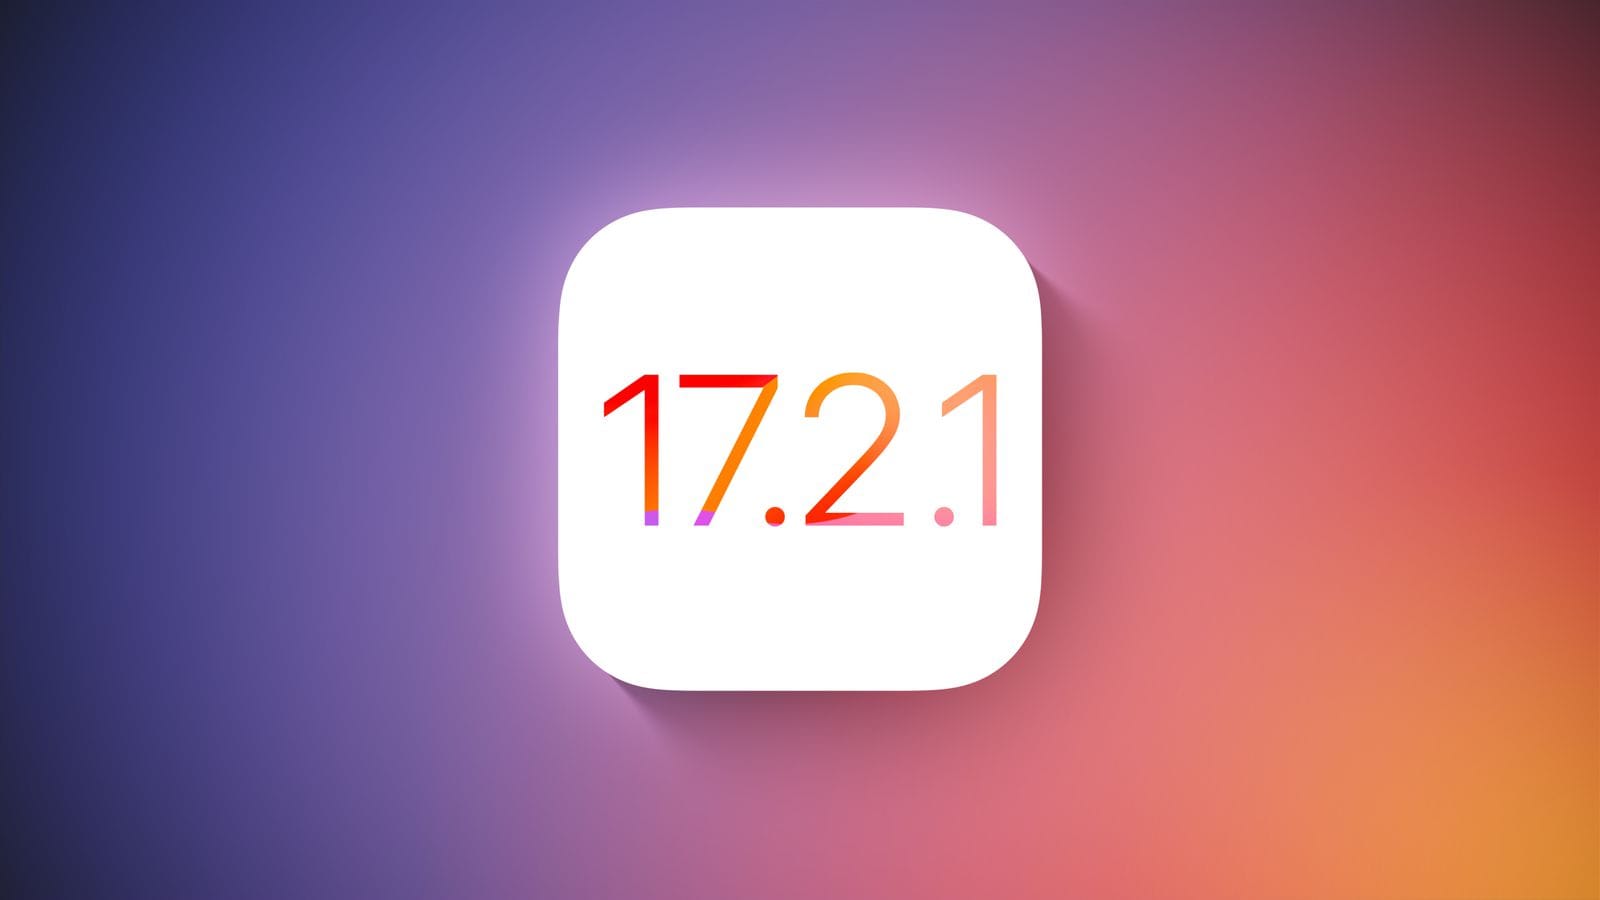 Apple перестала подписывать iOS 17.2.1